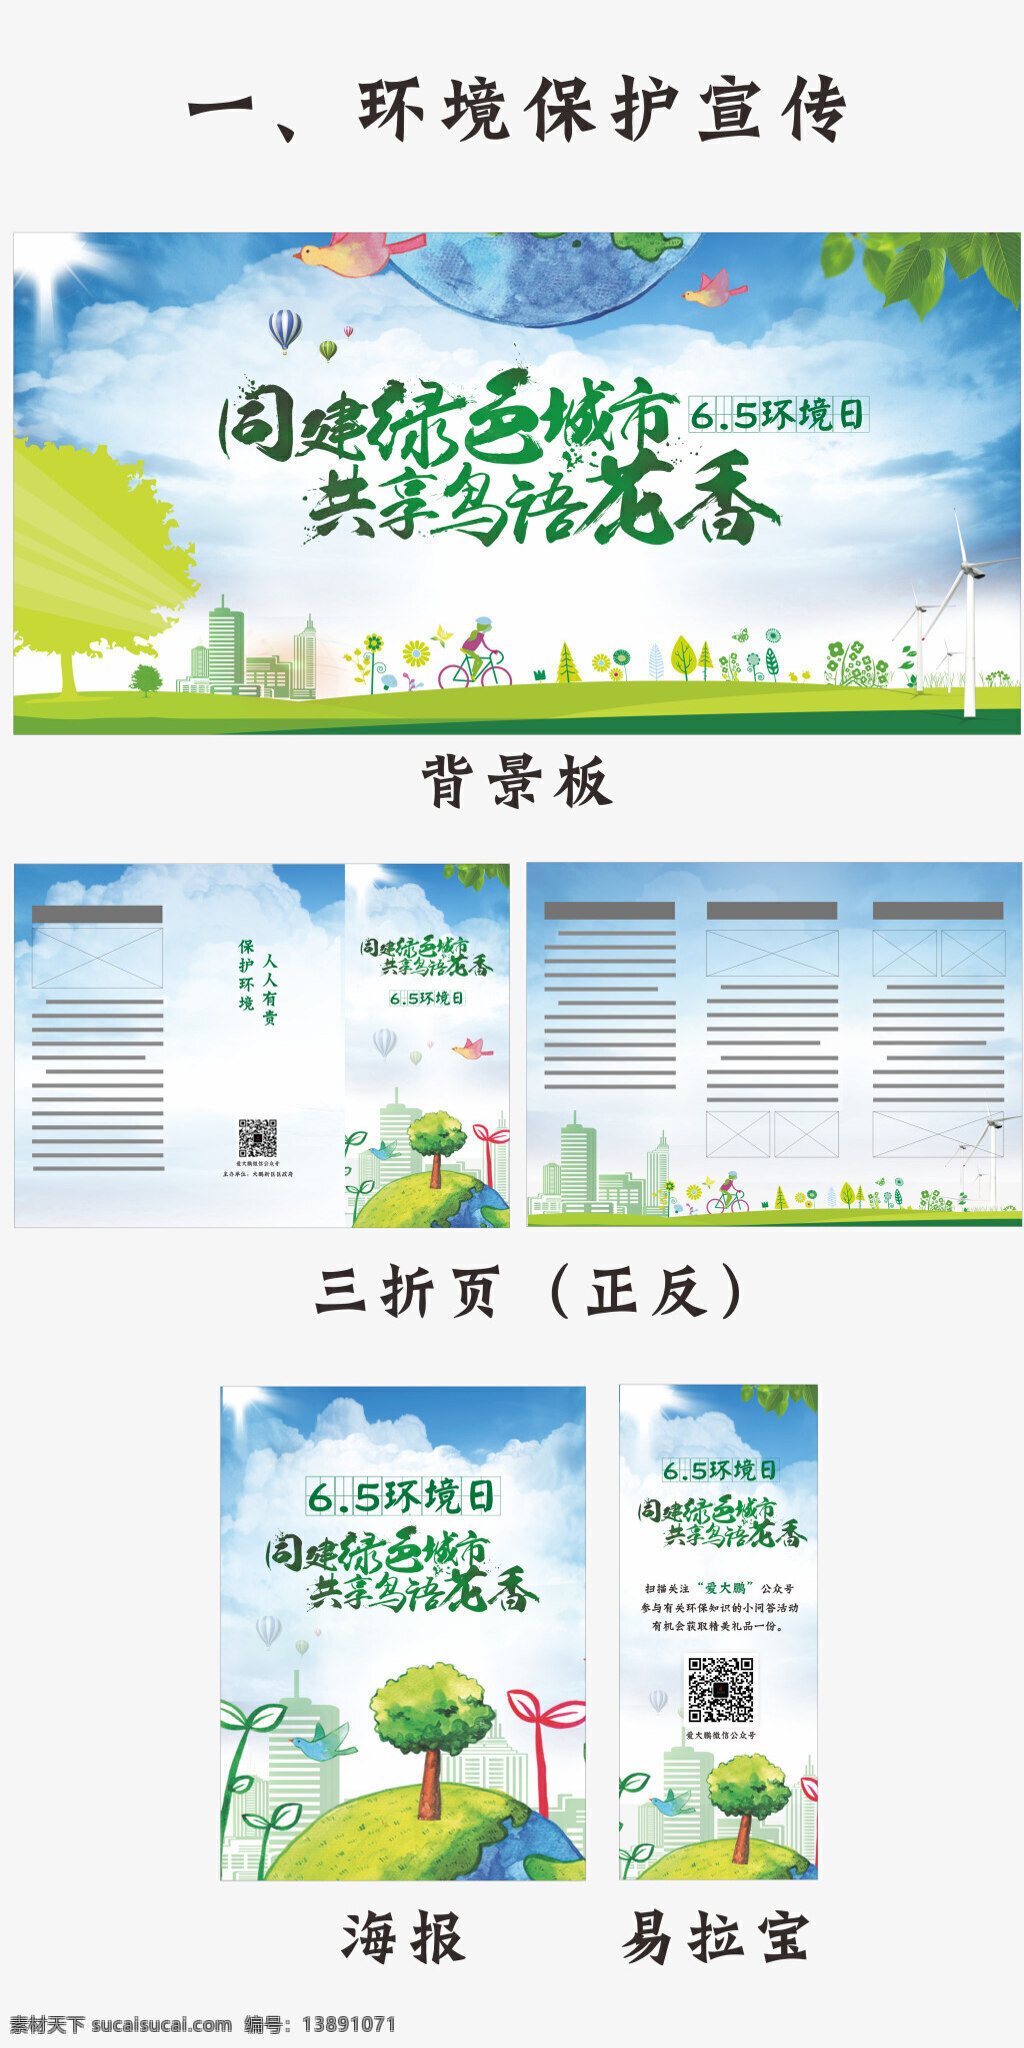 六 五 世界环境日 保护环境主题 绿色 节能 世界 环保 背景墙 海报 折页 易拉宝 清新